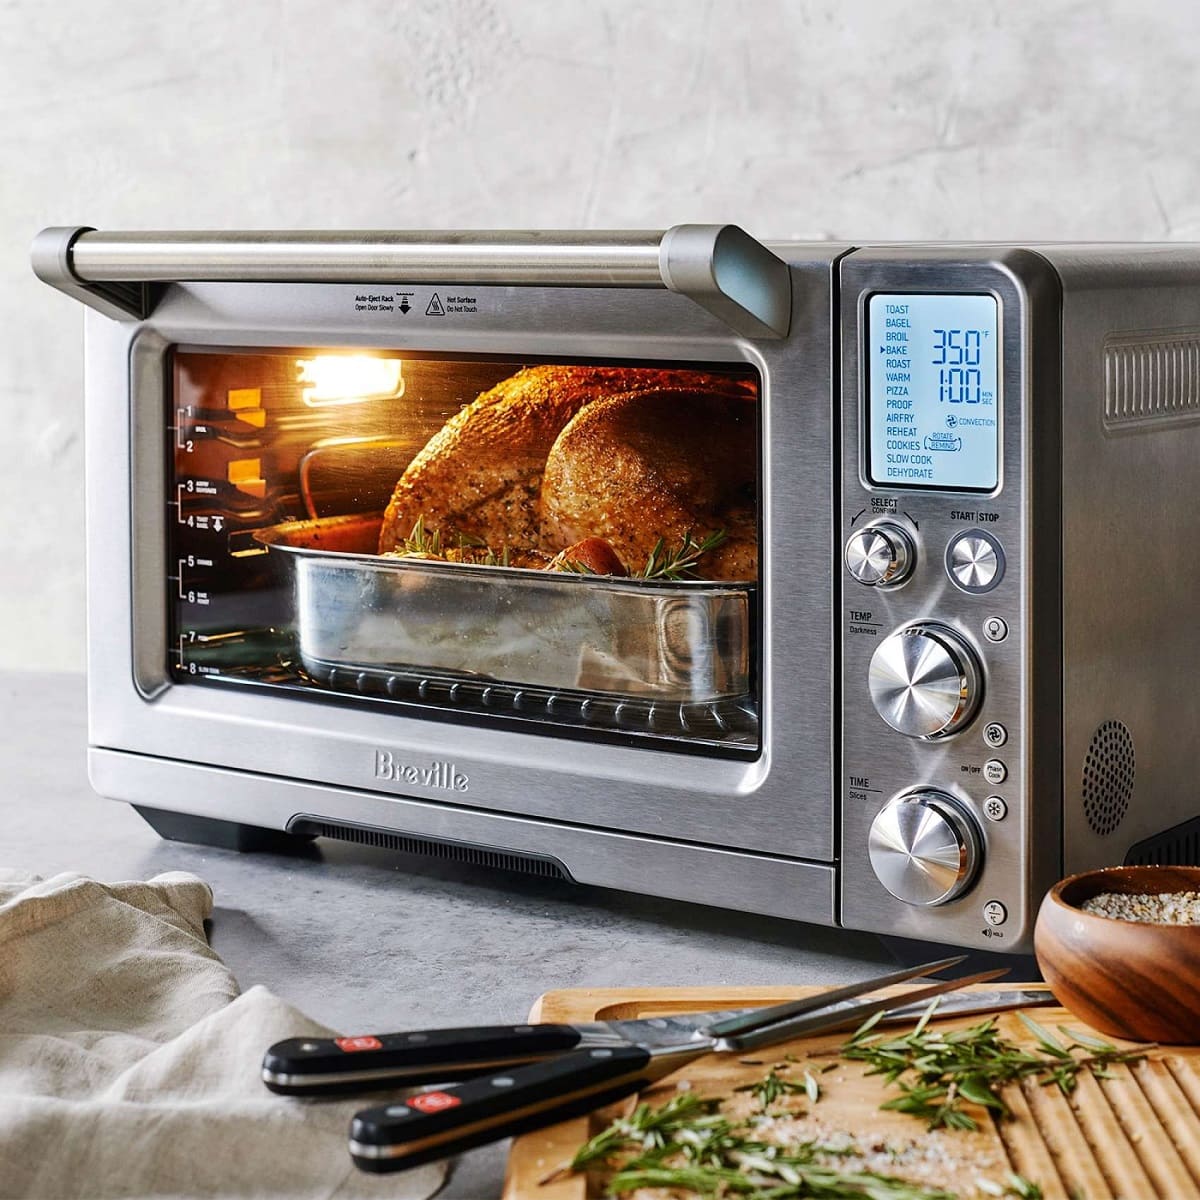 Breville Smart Oven Air Fryer Pro Review: Pros, Cons & Comparison